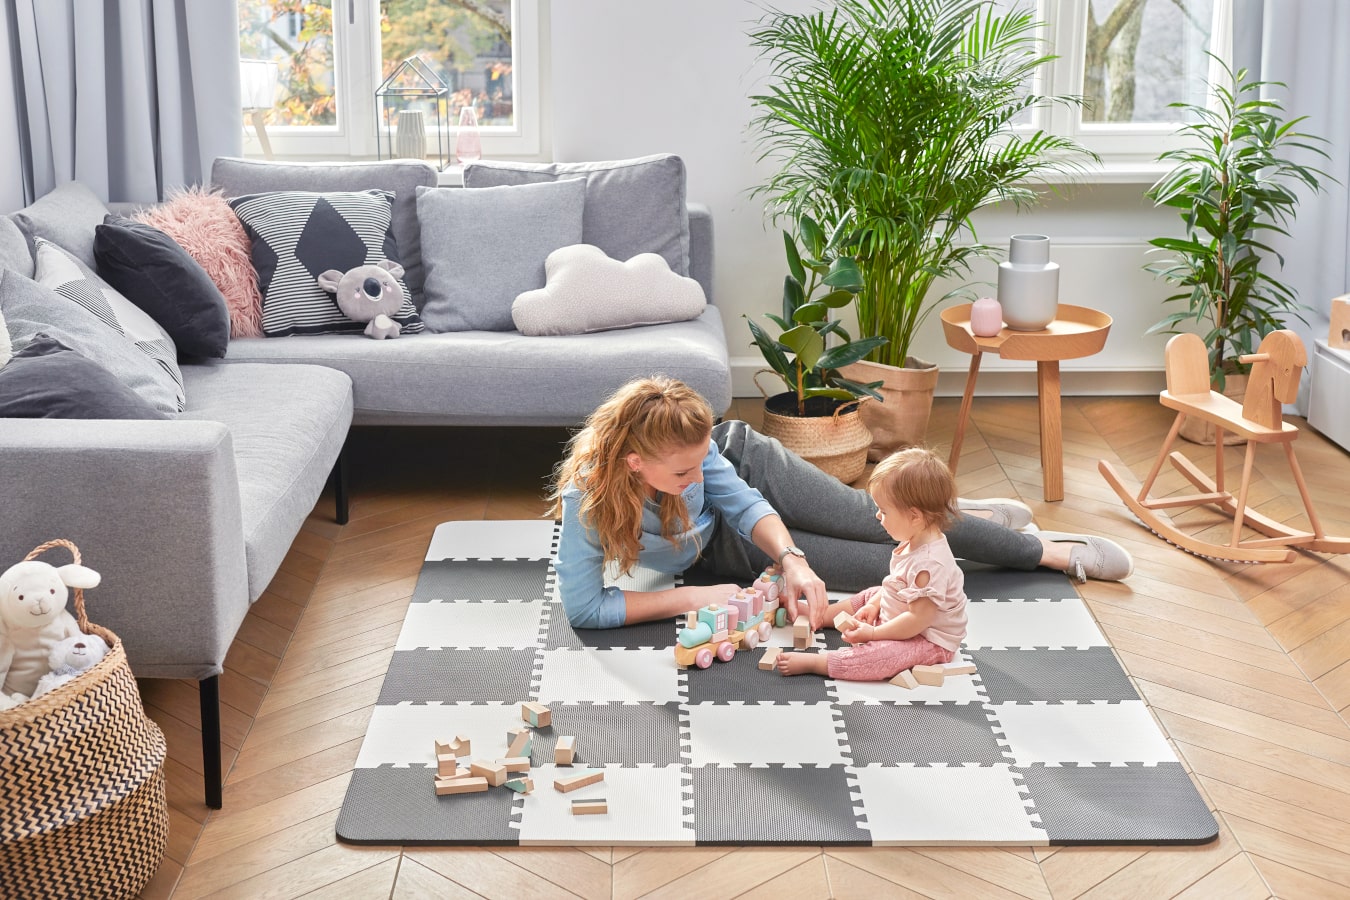 In salotto, la mamma e la bambina giocano insieme sul tappetino educativo LUNO.